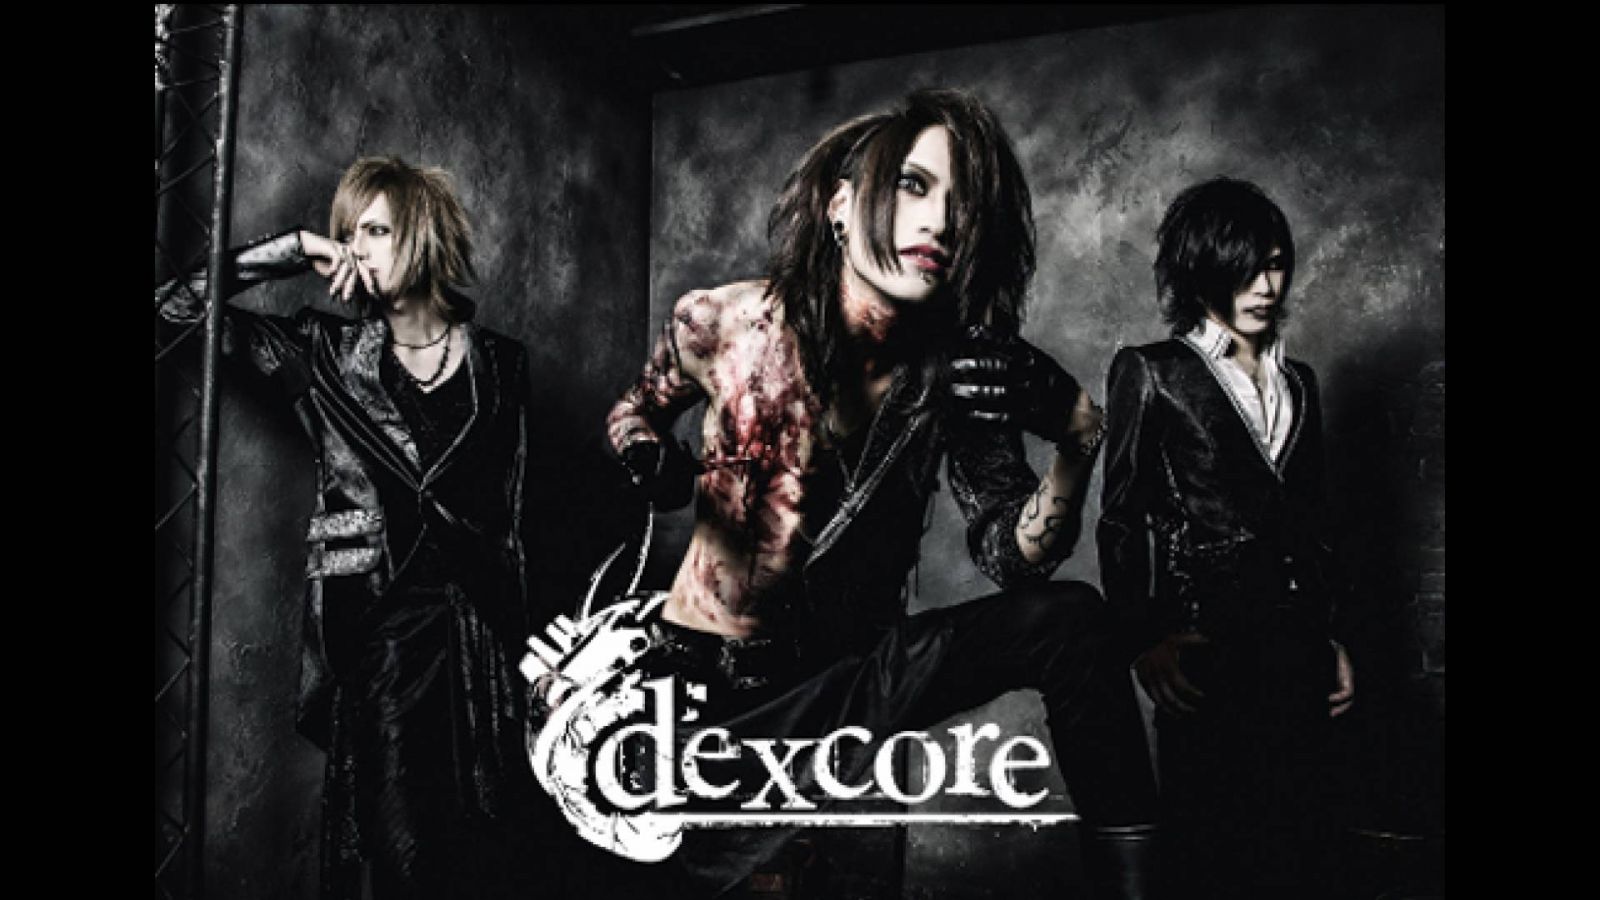 Musik von dexcore auf YouTube © Jelly Records